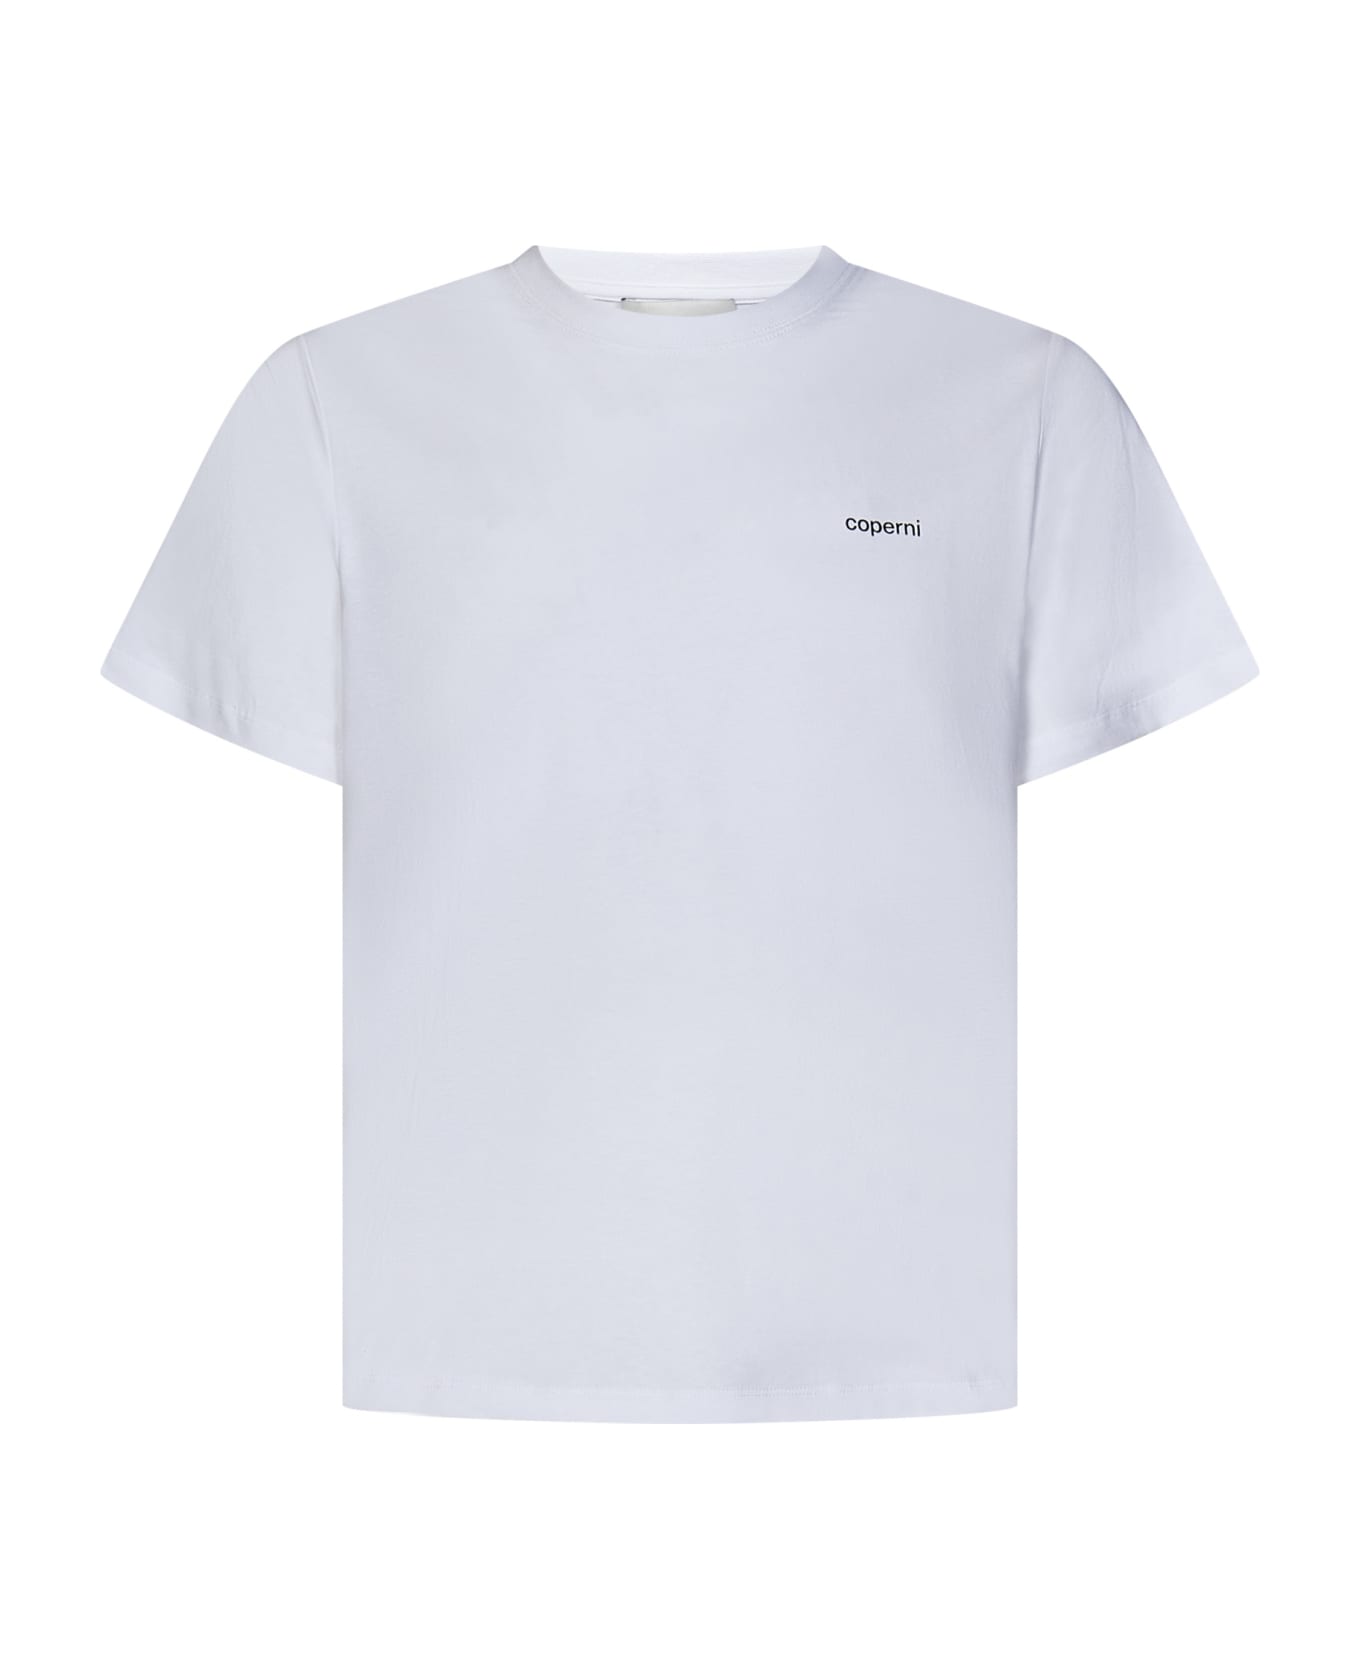 Coperni T-shirt - WHITE